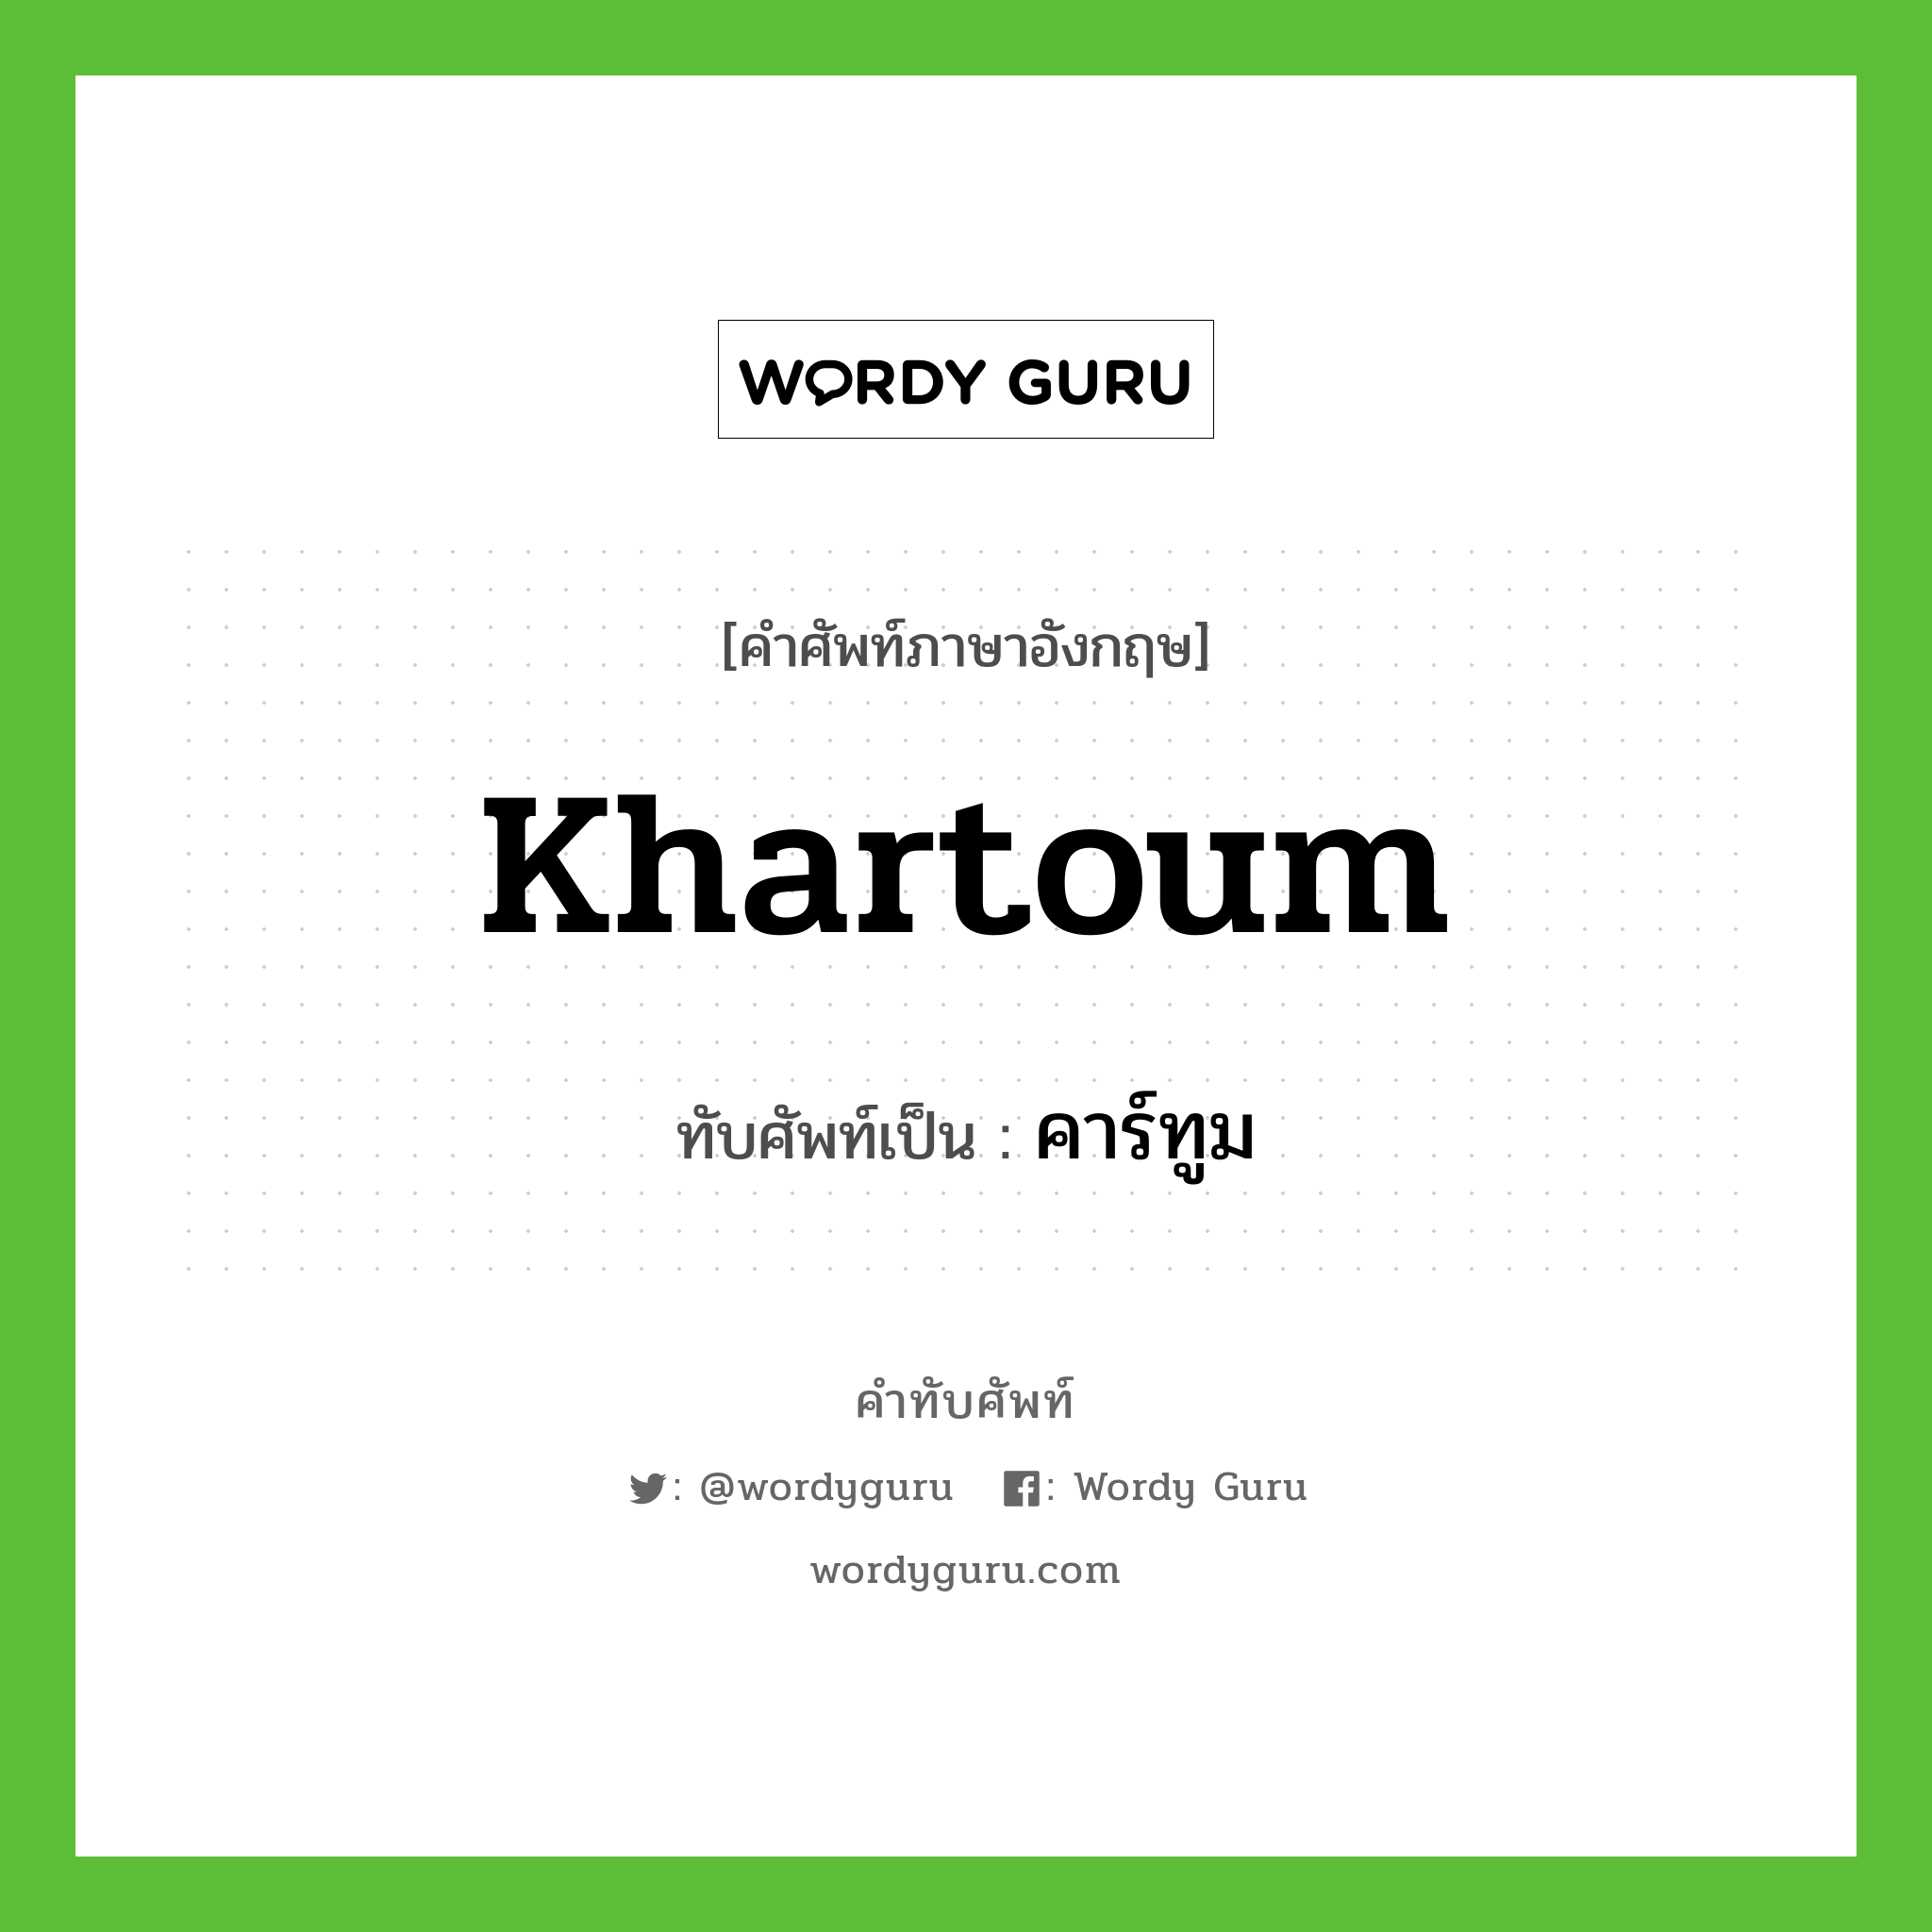 khartoum เขียนเป็นคำไทยว่าอะไร?, คำศัพท์ภาษาอังกฤษ khartoum ทับศัพท์เป็น คาร์ทูม